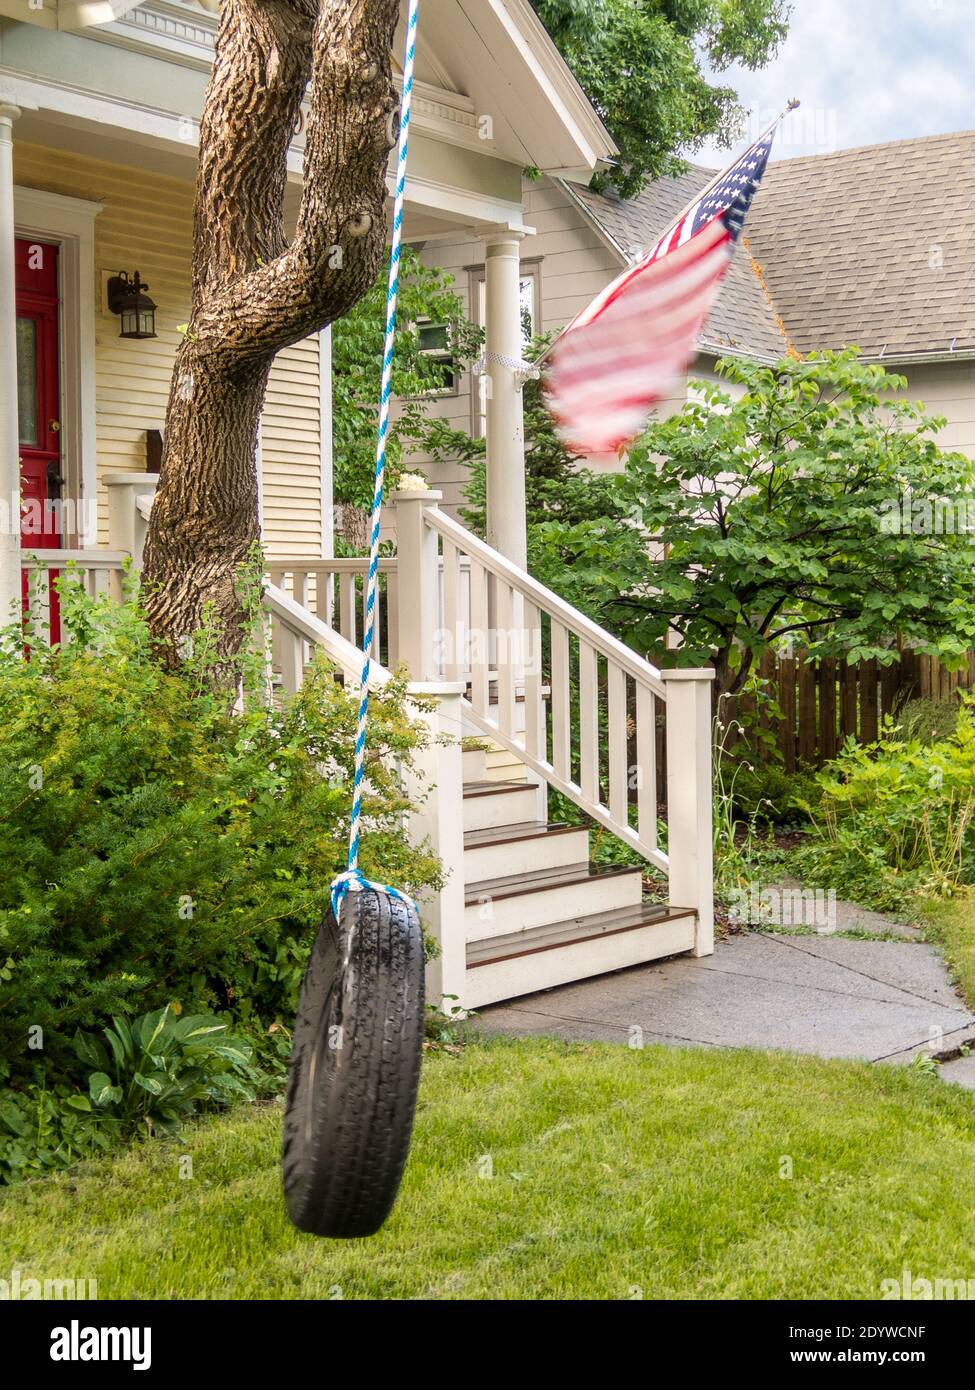 Wind aus vorbeiziehenden Gewitter bläst die amerikanische Flagge und die Reifenschaukel im Vorgarten dieses Kolonialhauses - Metapher für die Bedrohung der Demokratie Stockfoto